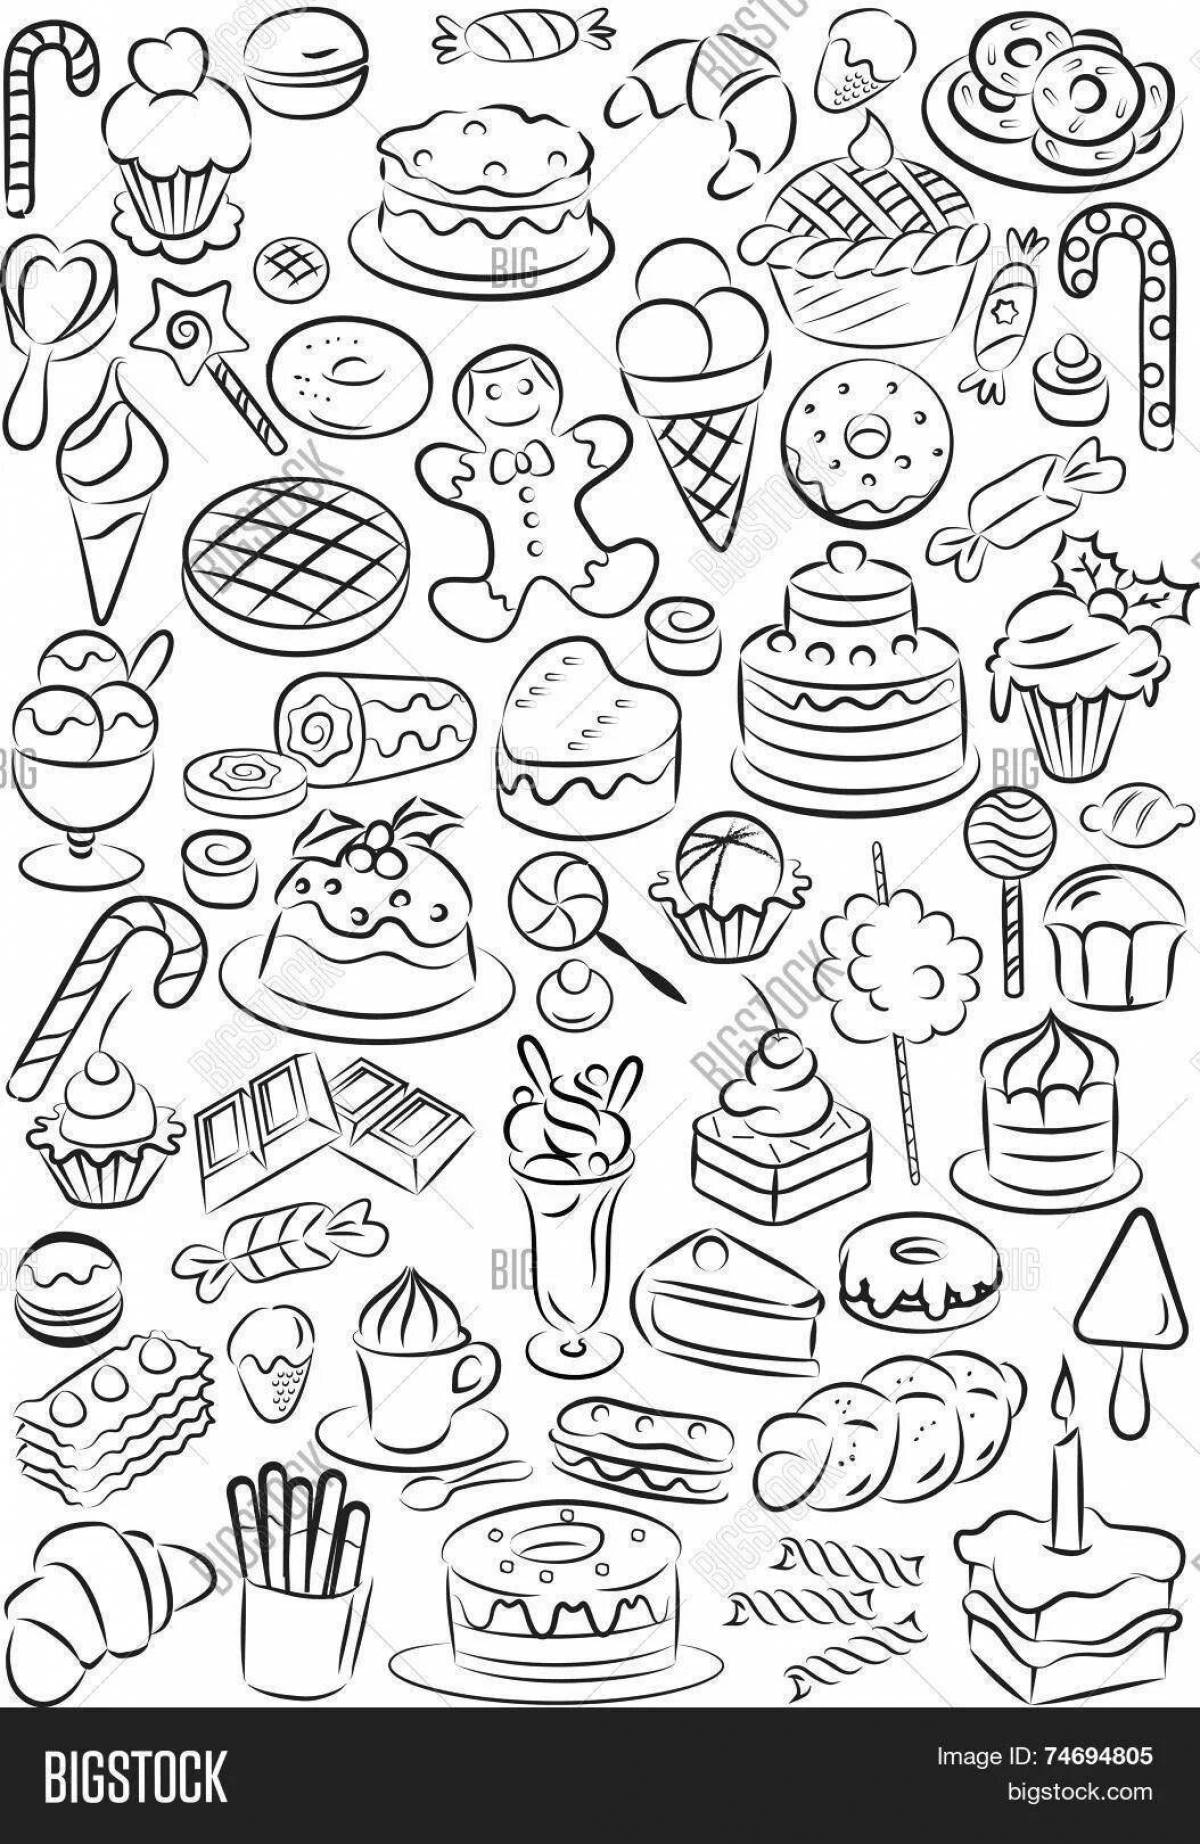 Ореховая раскраска страницы еды